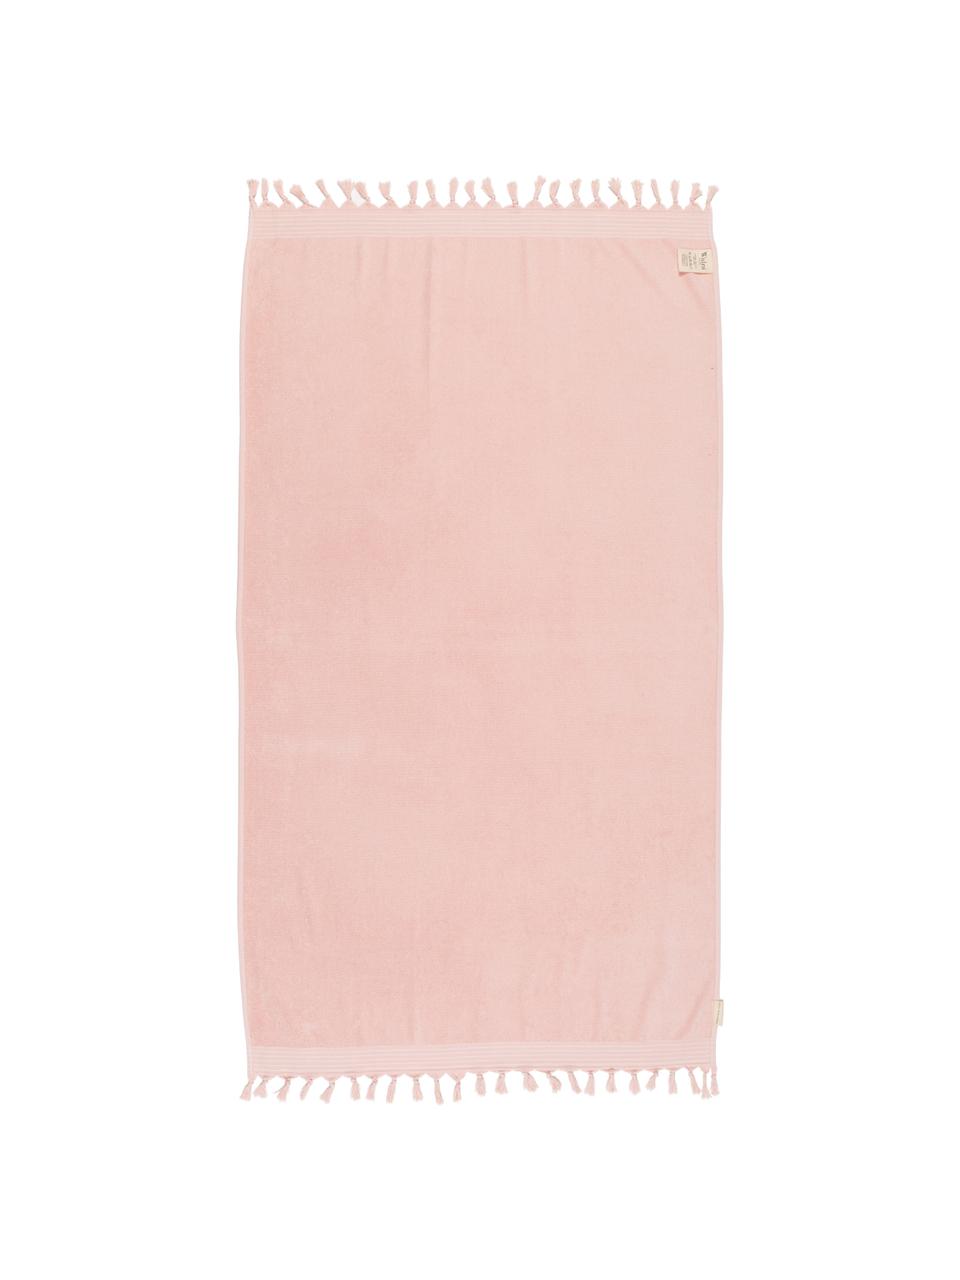 Fouta Soft Cotton, Reverso: afelpado, Rosa, blanco, An 100 x L 180 cm